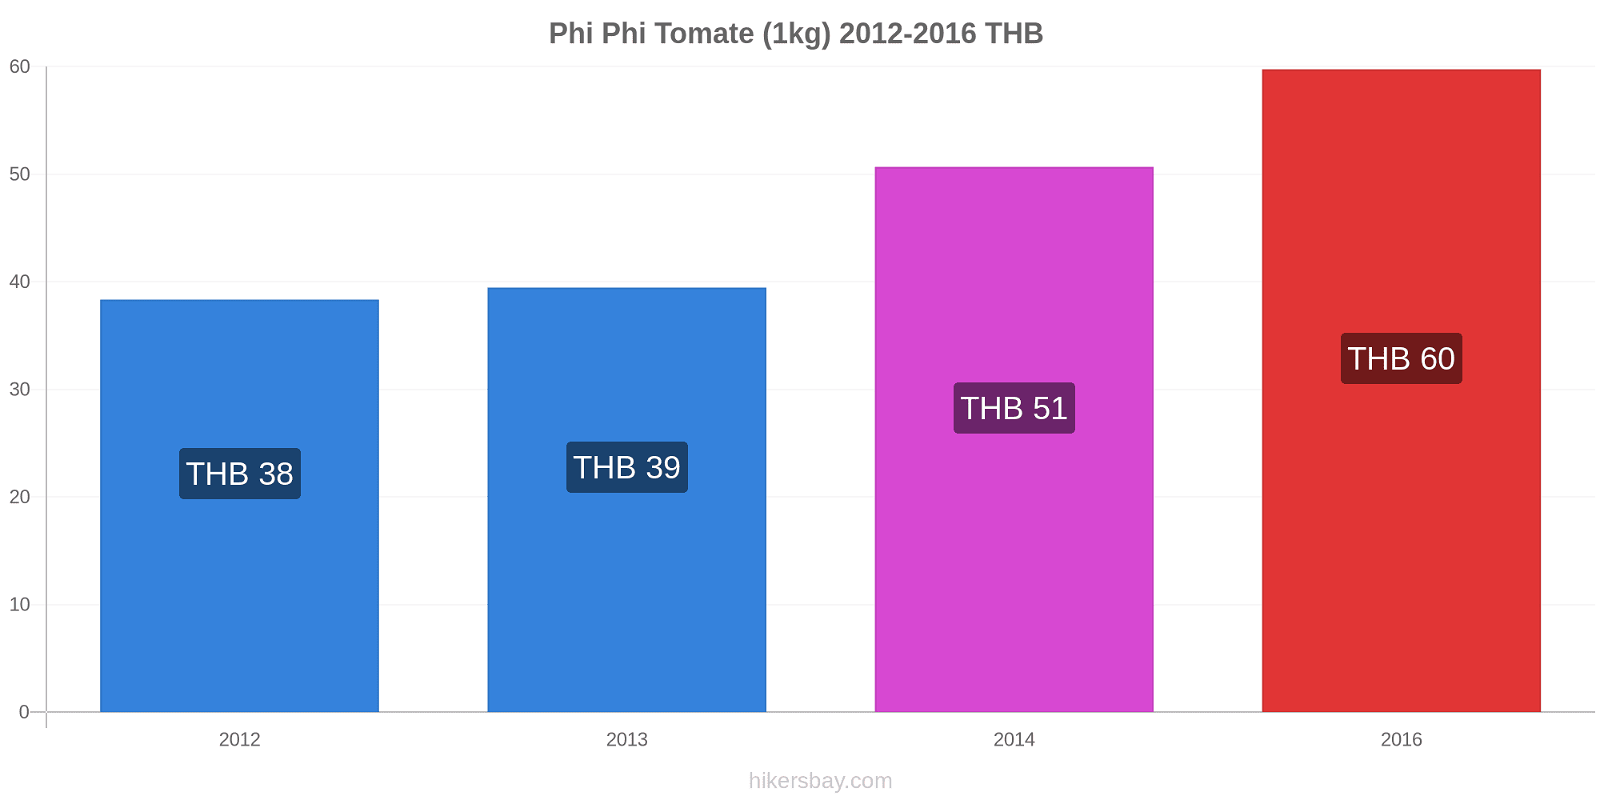 Phi Phi cambios de precios Tomate (1kg) hikersbay.com